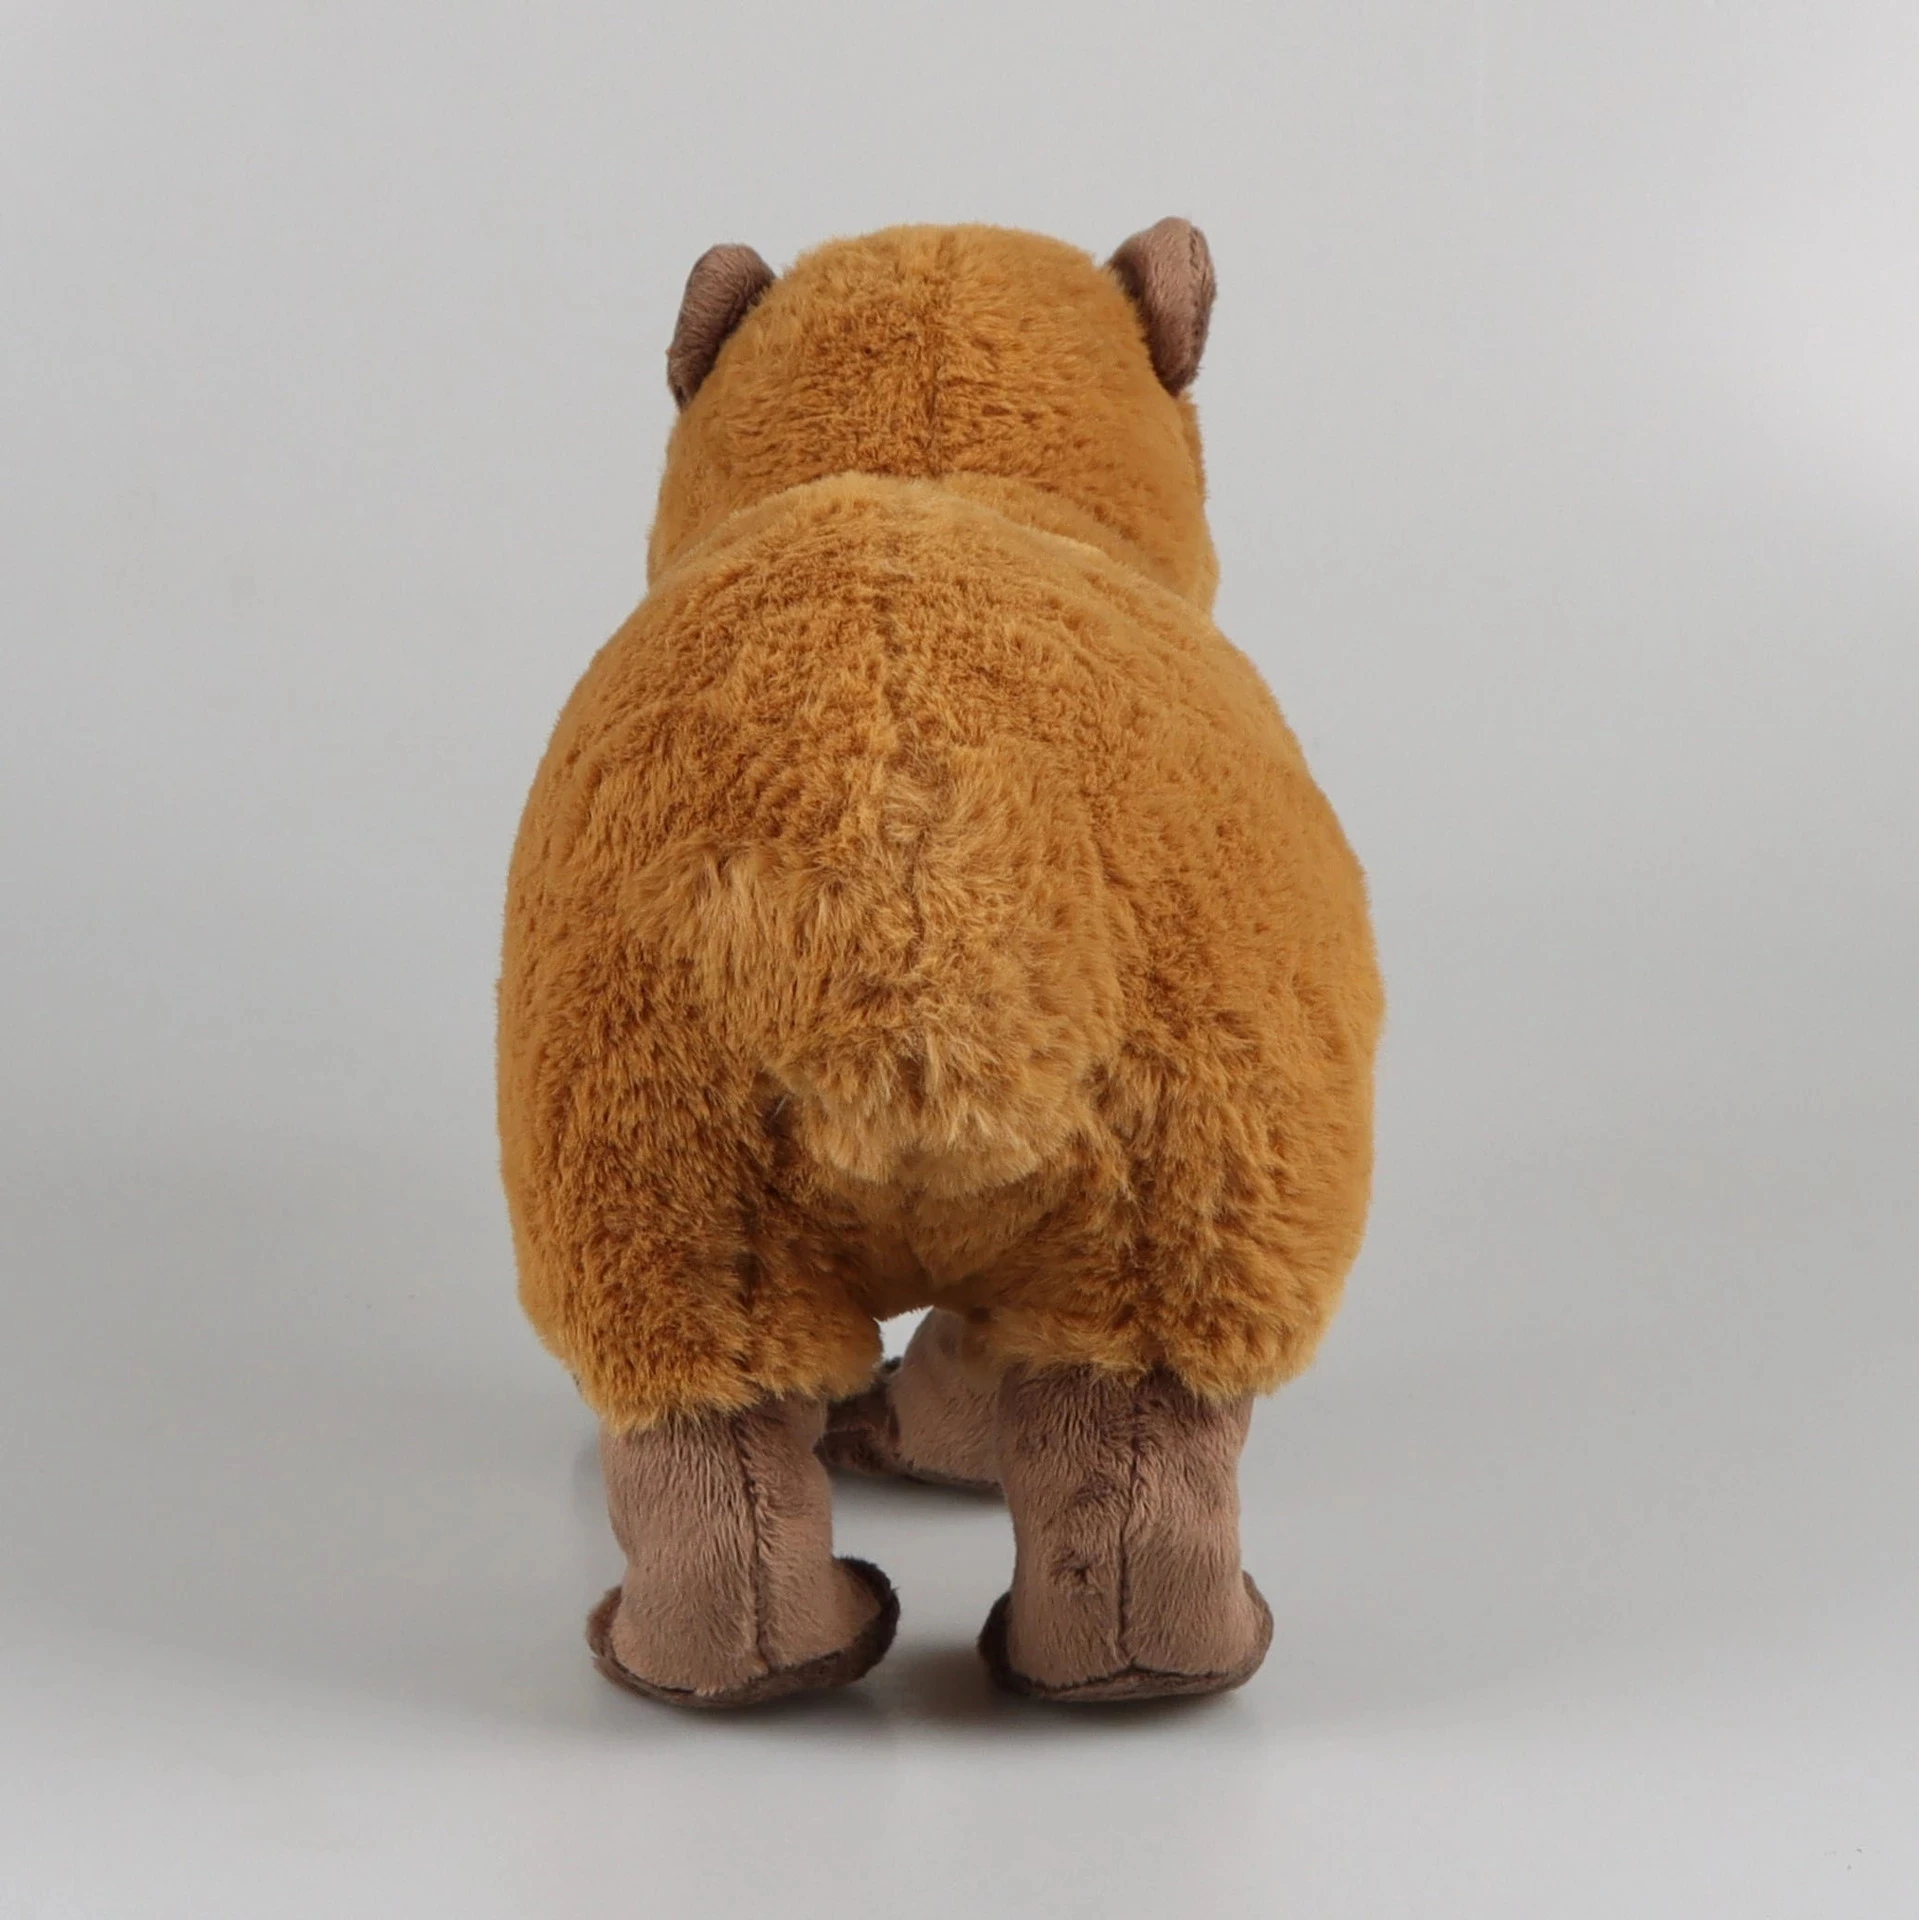 WAIMXDAO 35cm Niedlichen Capybara Plüschtier,Simulation Capybara  Plüschtier,Capybara Kuscheltiere Capybara Plush Toy,Super Weiche Capybara  Spielzeug